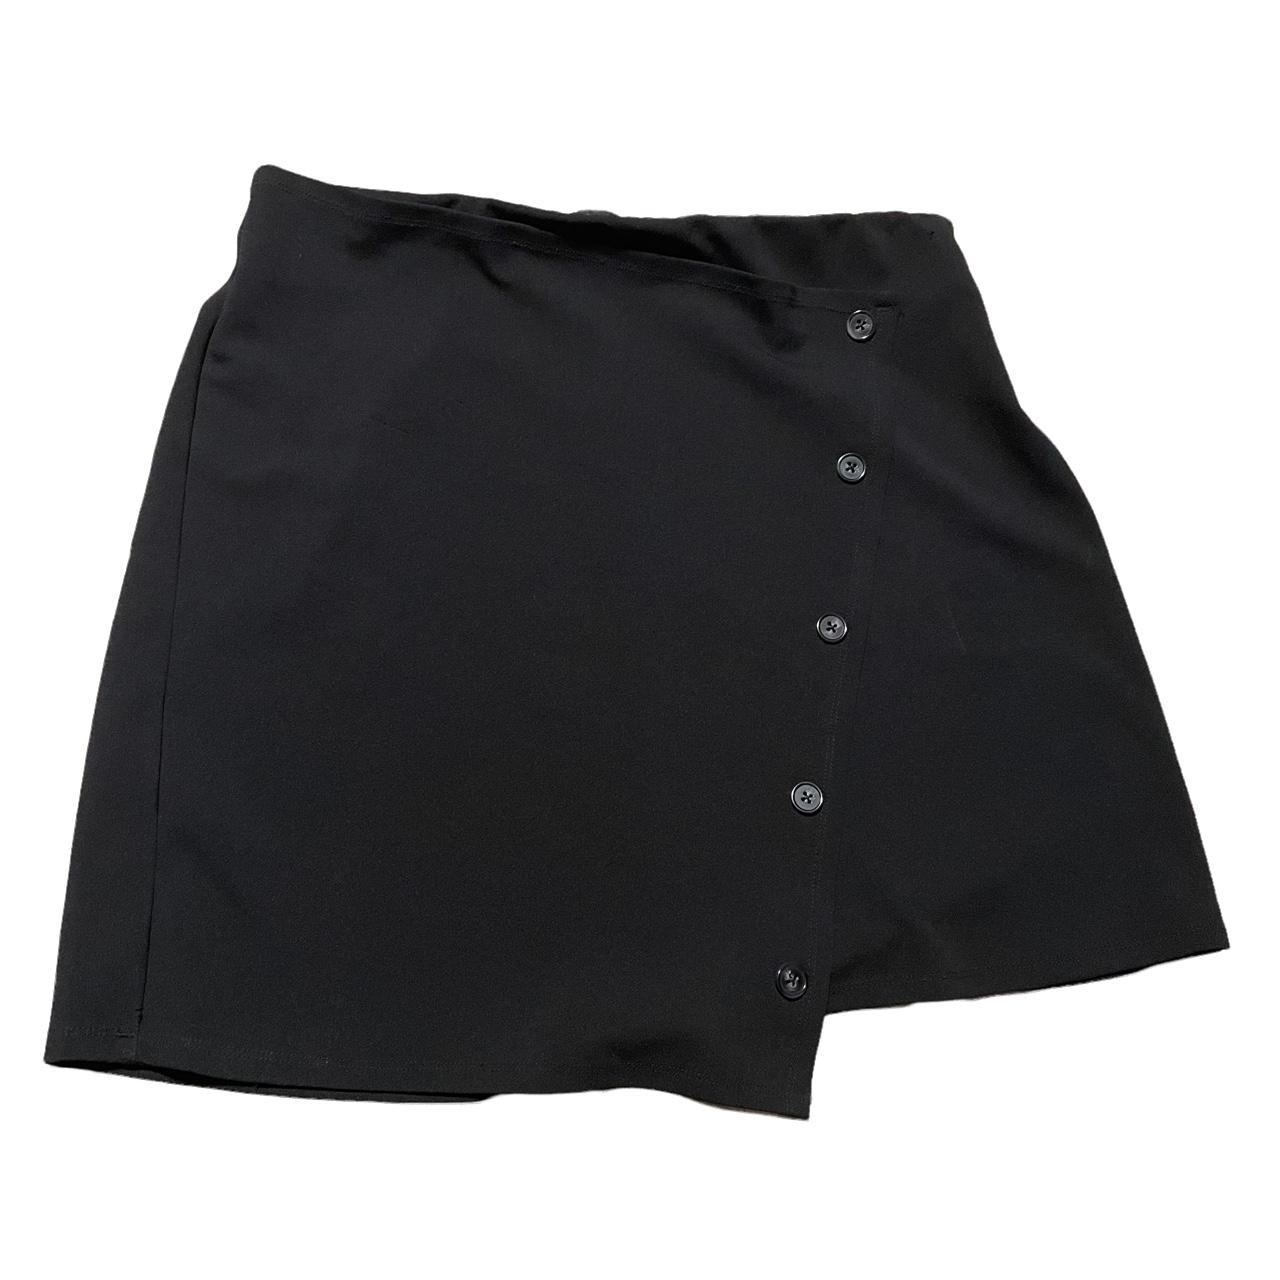 Torrid black shirt skirt size 0 with buttons... - Depop